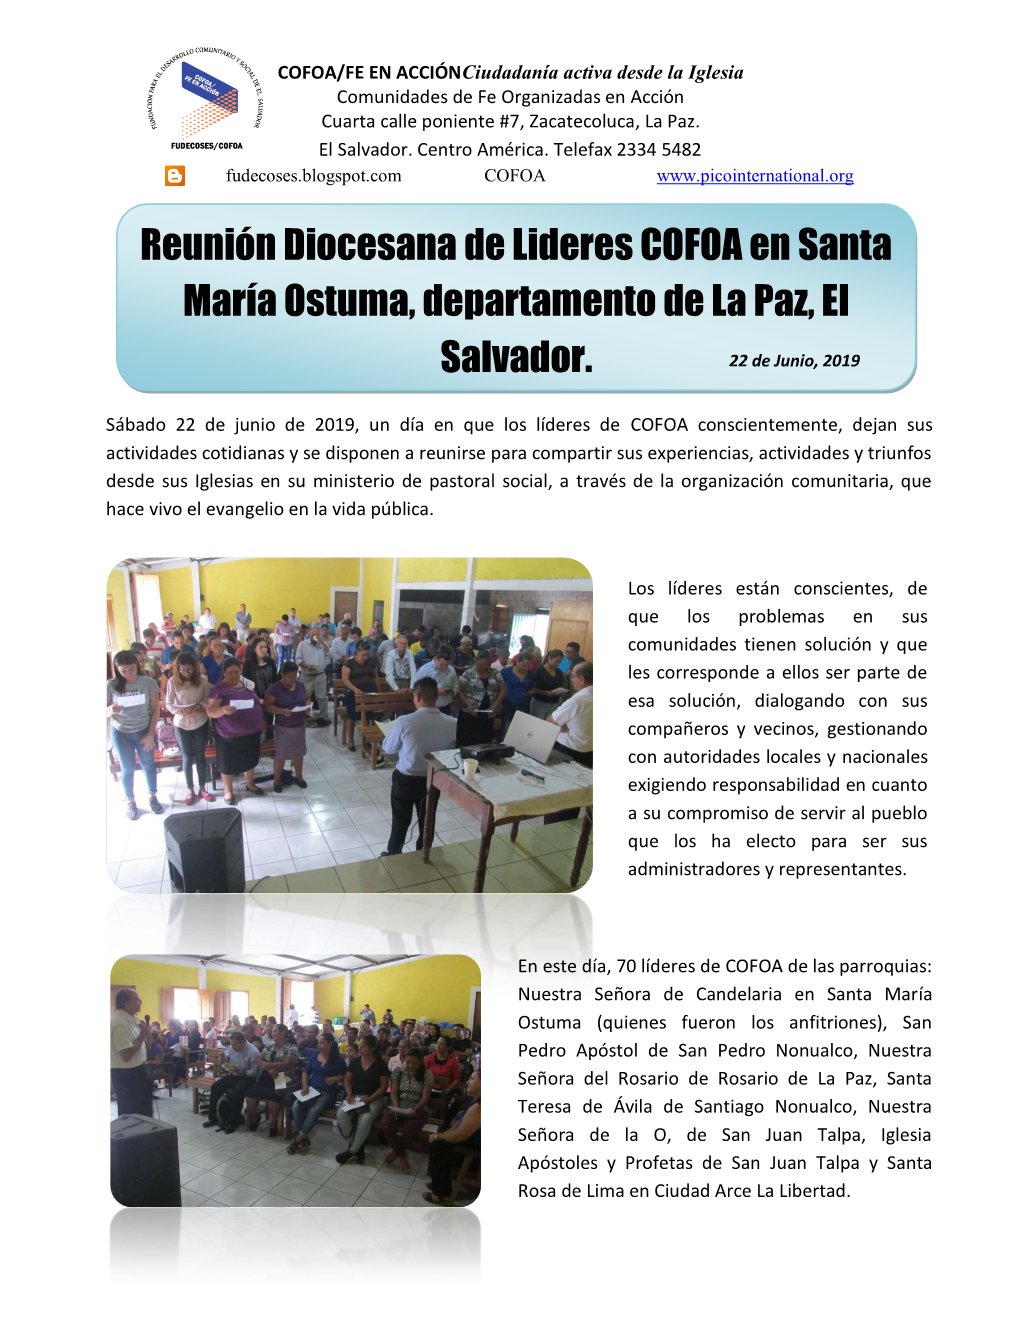 Reunión Diocesana De Lideres COFOA En Santa María Ostuma, Departamento De La Paz, El